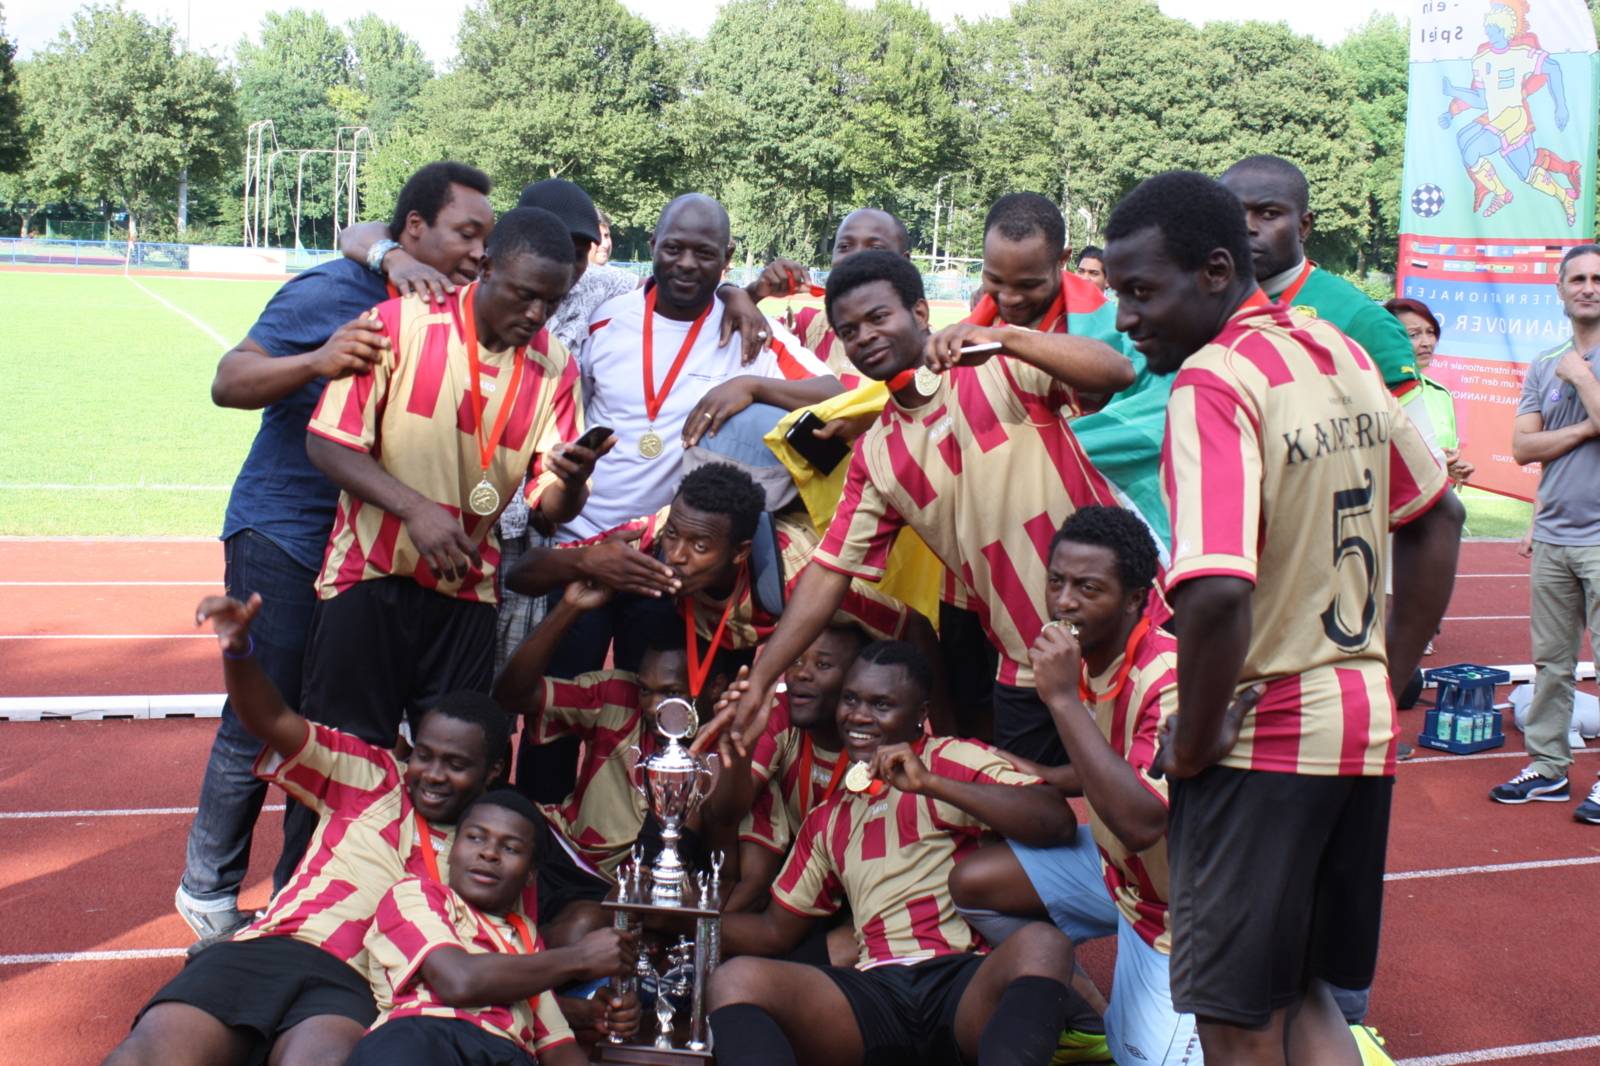 15 Spieler des Team Kamerun feiern ausgelassen den Titelgewinn und posieren mit dem Pokal für ein Foto.